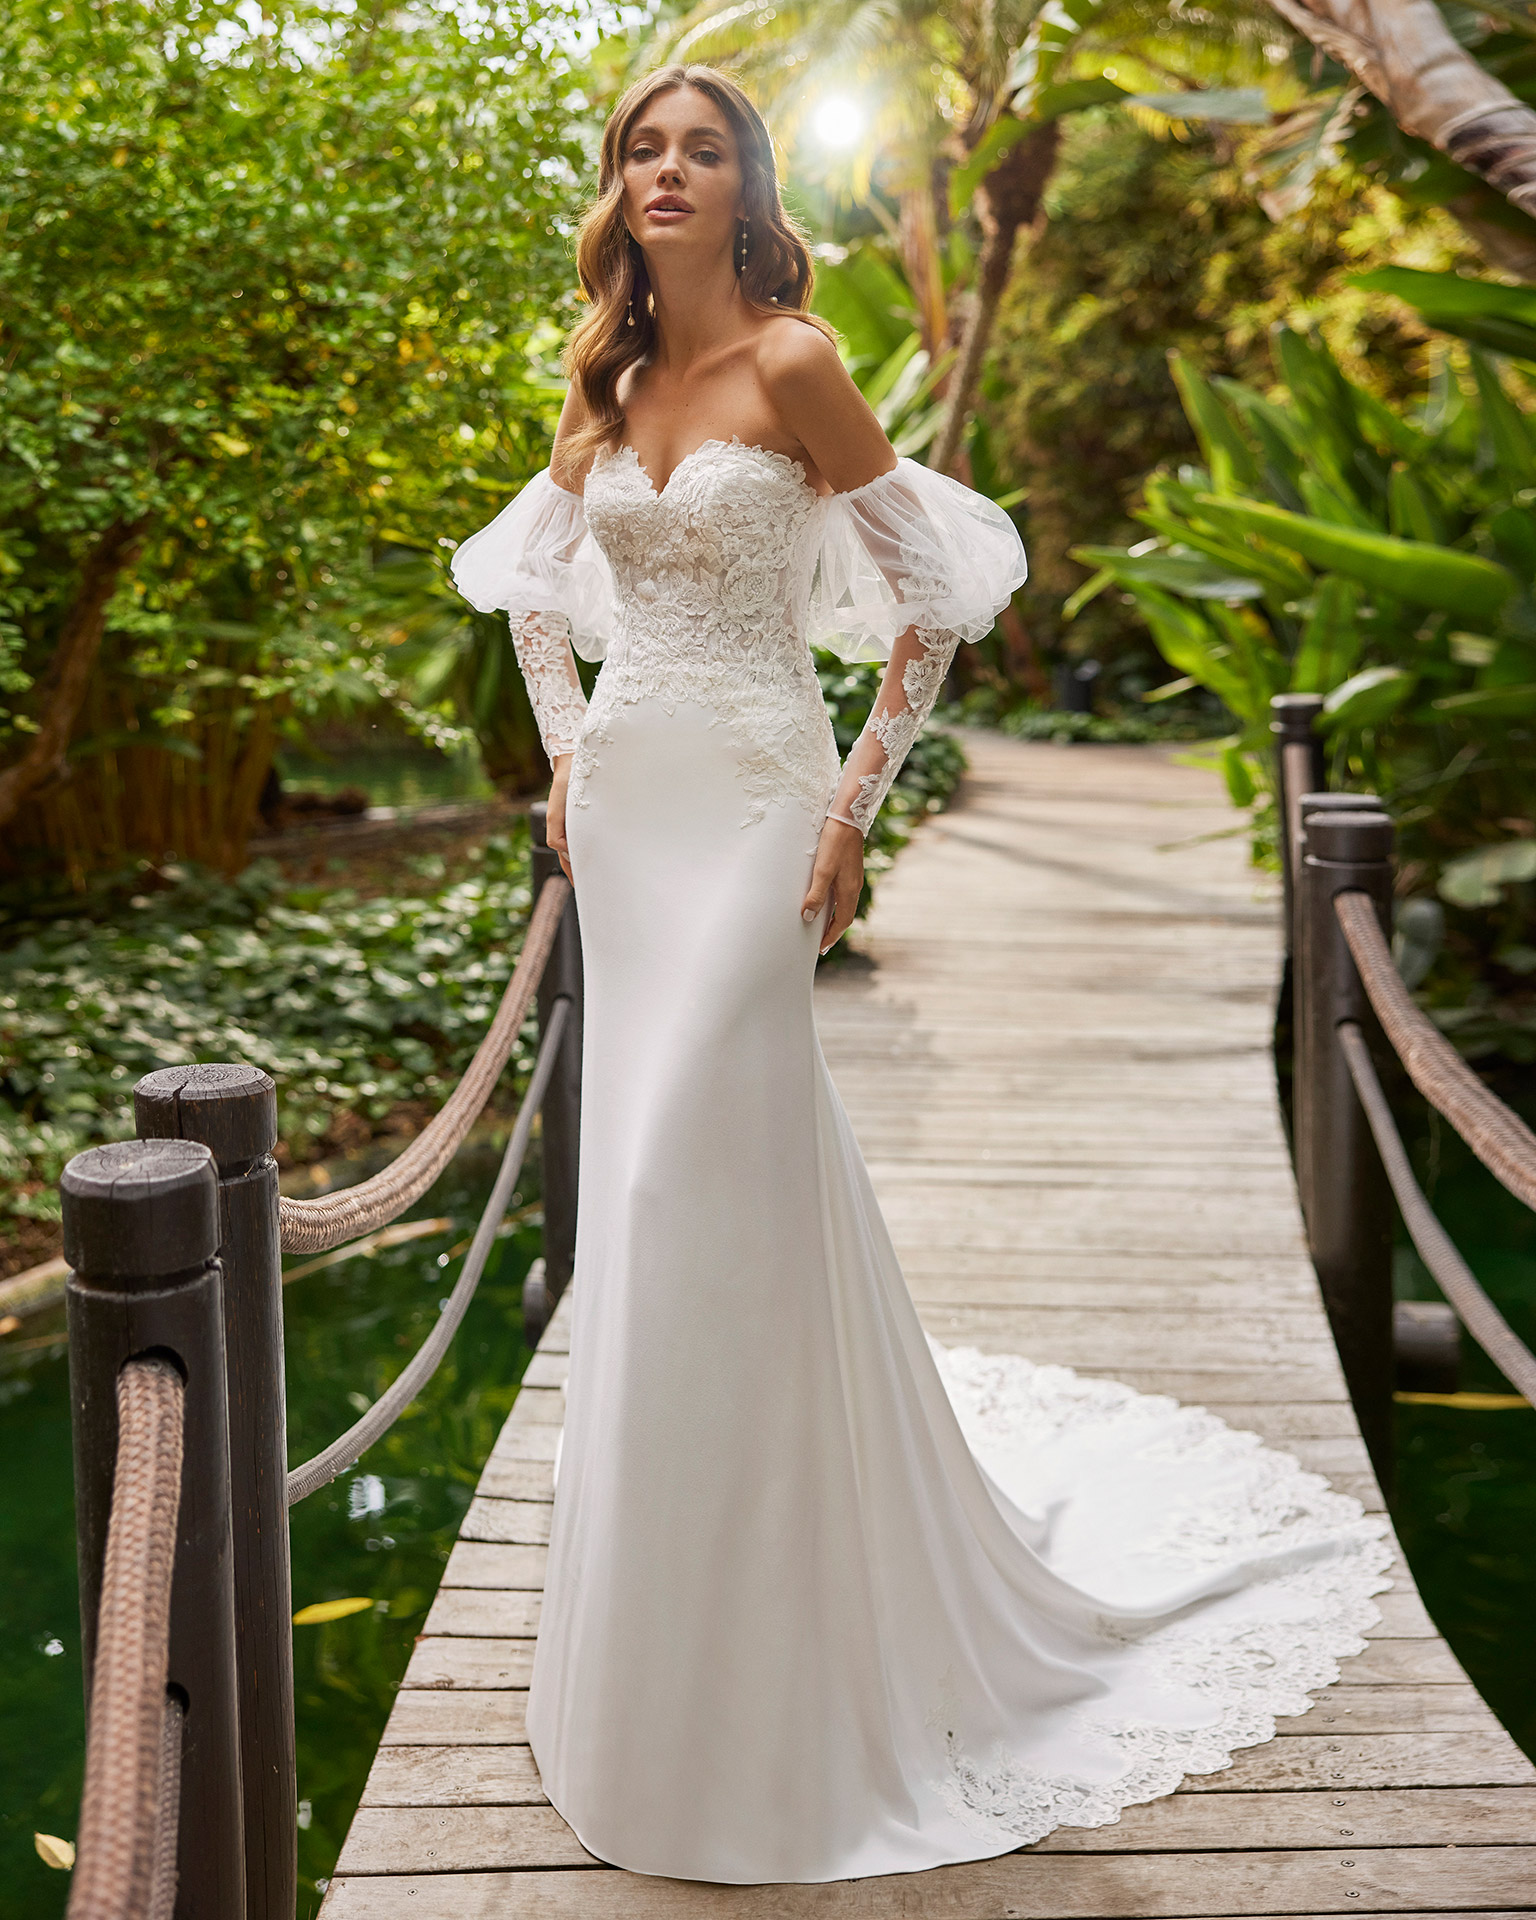 Vestido de noiva coleção 2022 casamento princesa boho minimalista bh atelier